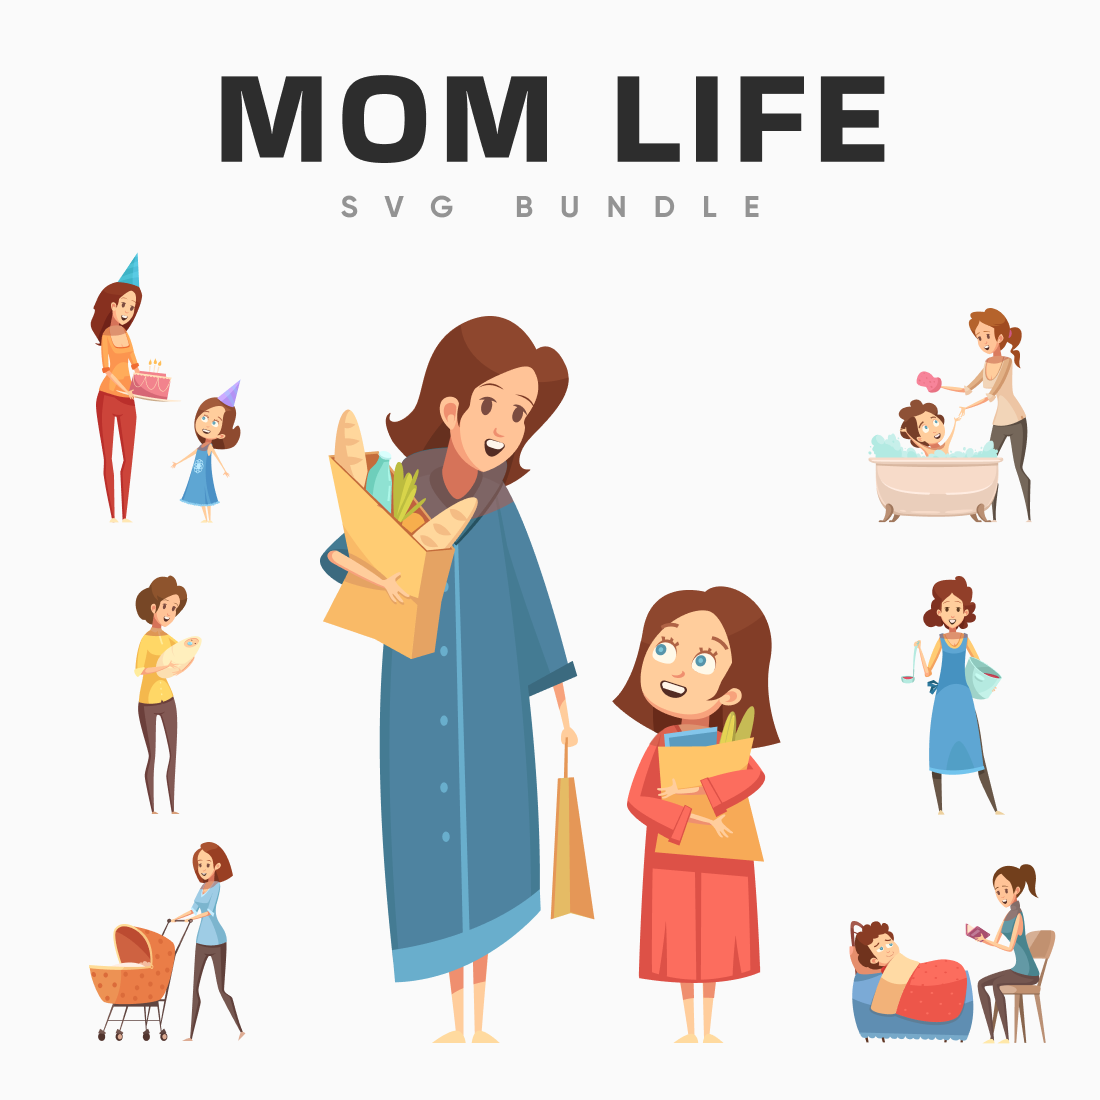 Mom life svg bundle main cover.